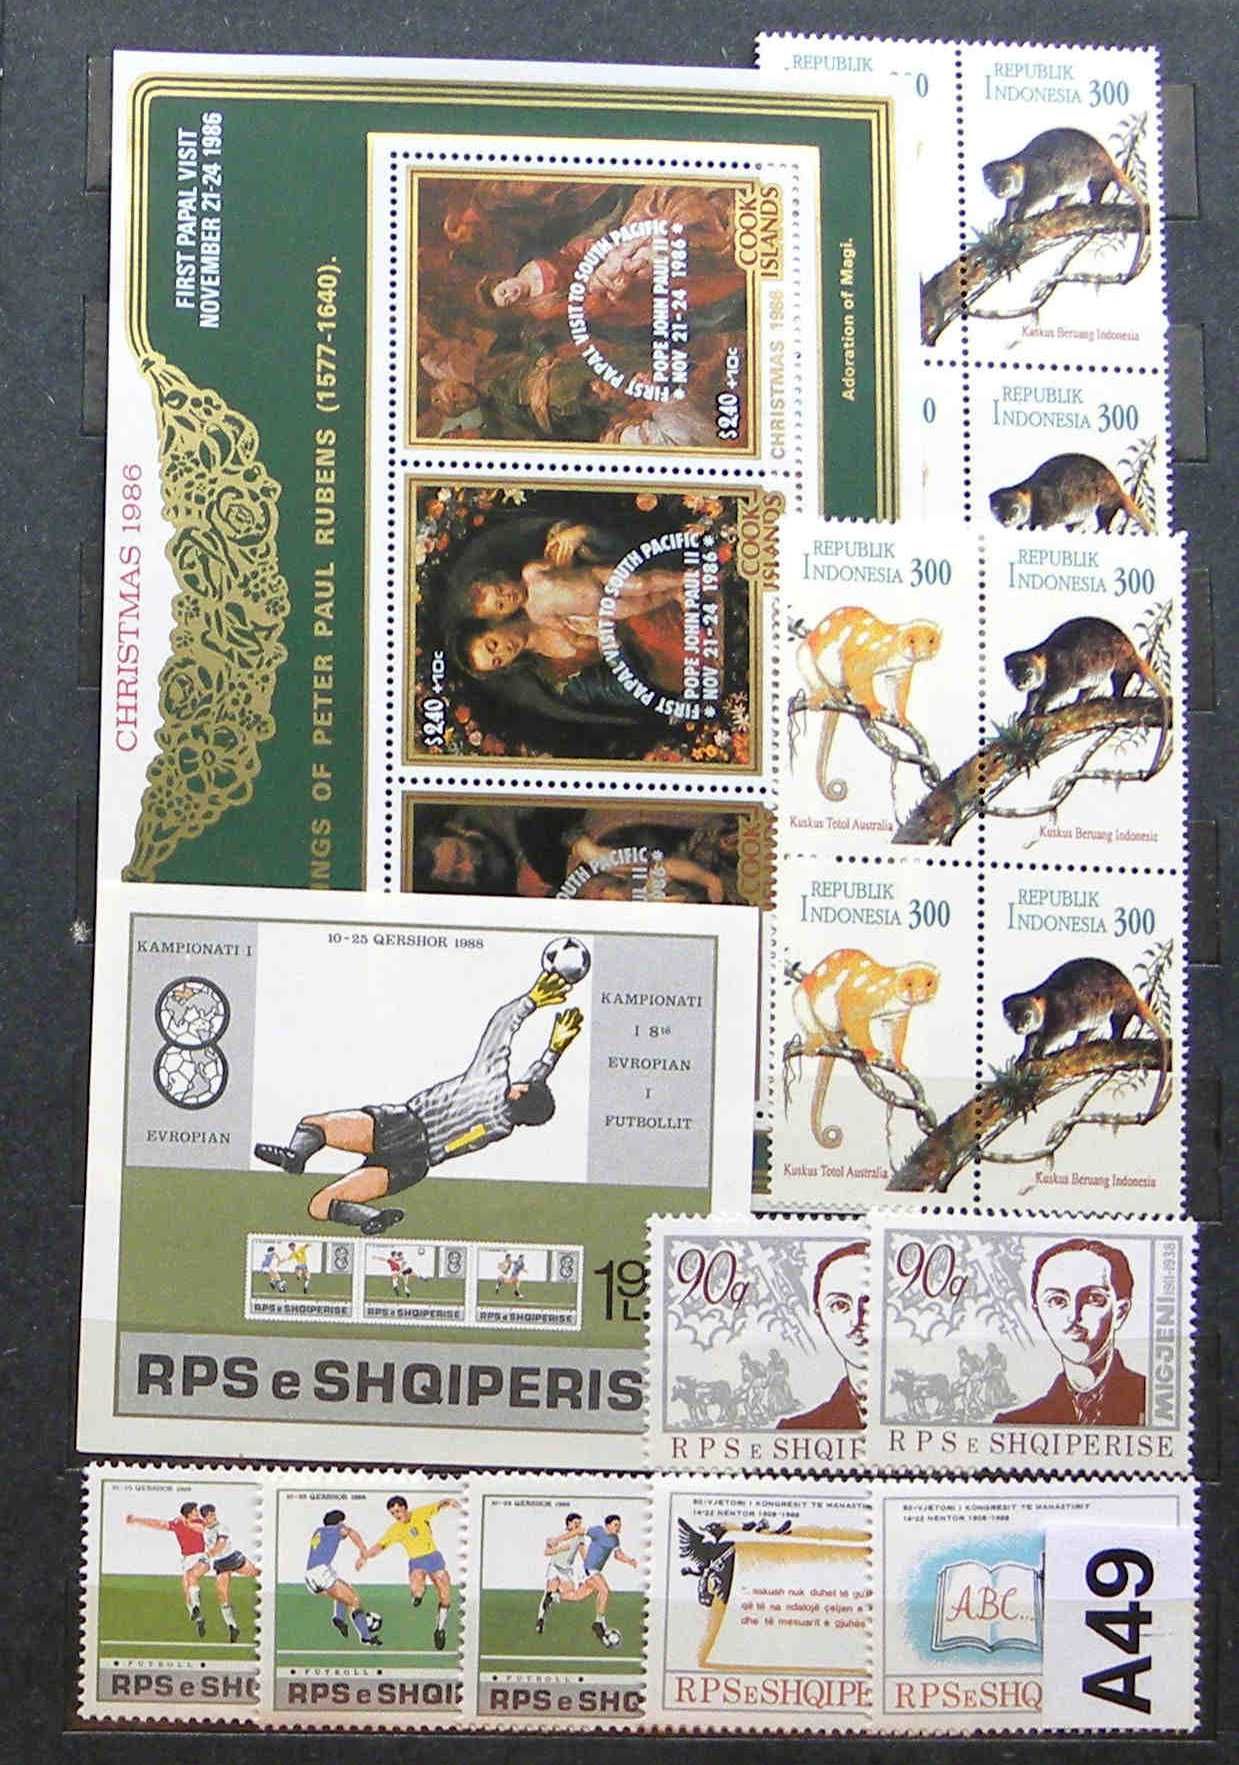 Mini klaser ze znaczkami, znaczki pocztowe czyste